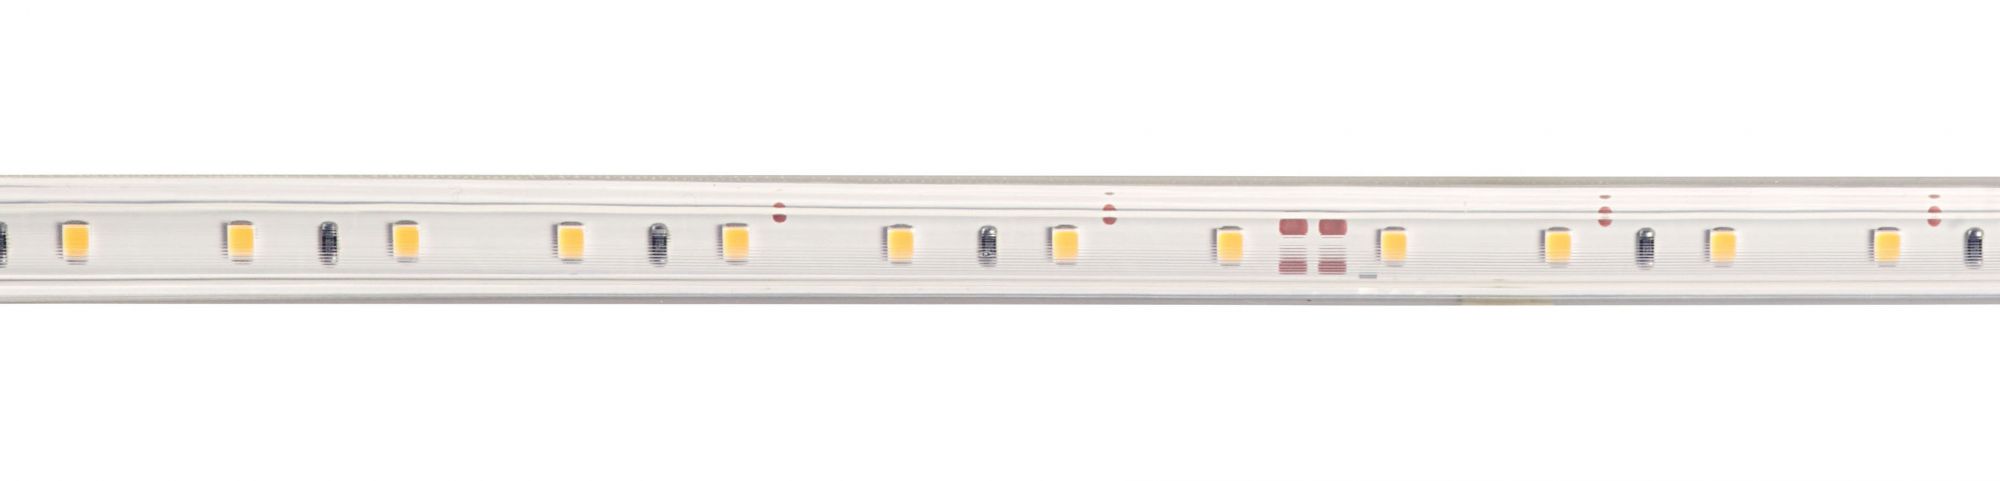 ARIC 55291 - LEDY 230 - Ruban LED protégé IP65 230V 8W/m, 60 LED/m 4000K  650lm/m, lg : 30m.